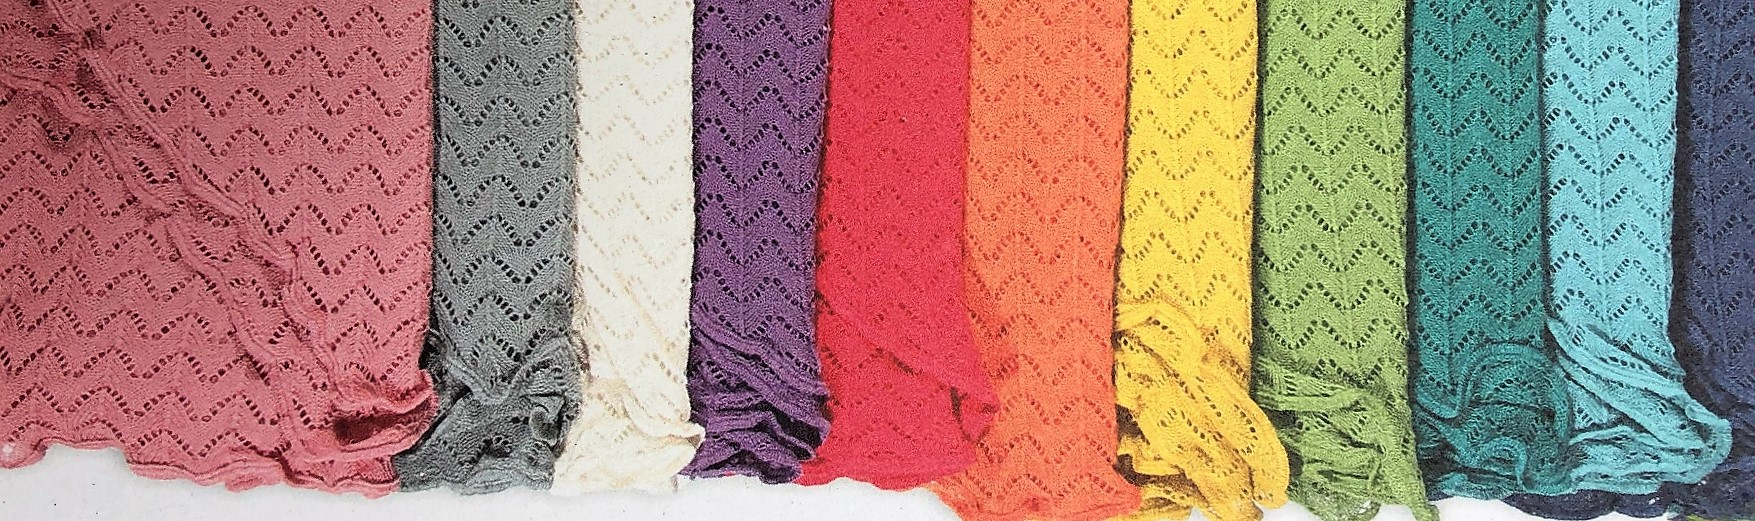 Tücher & Schals aus Baumwolle